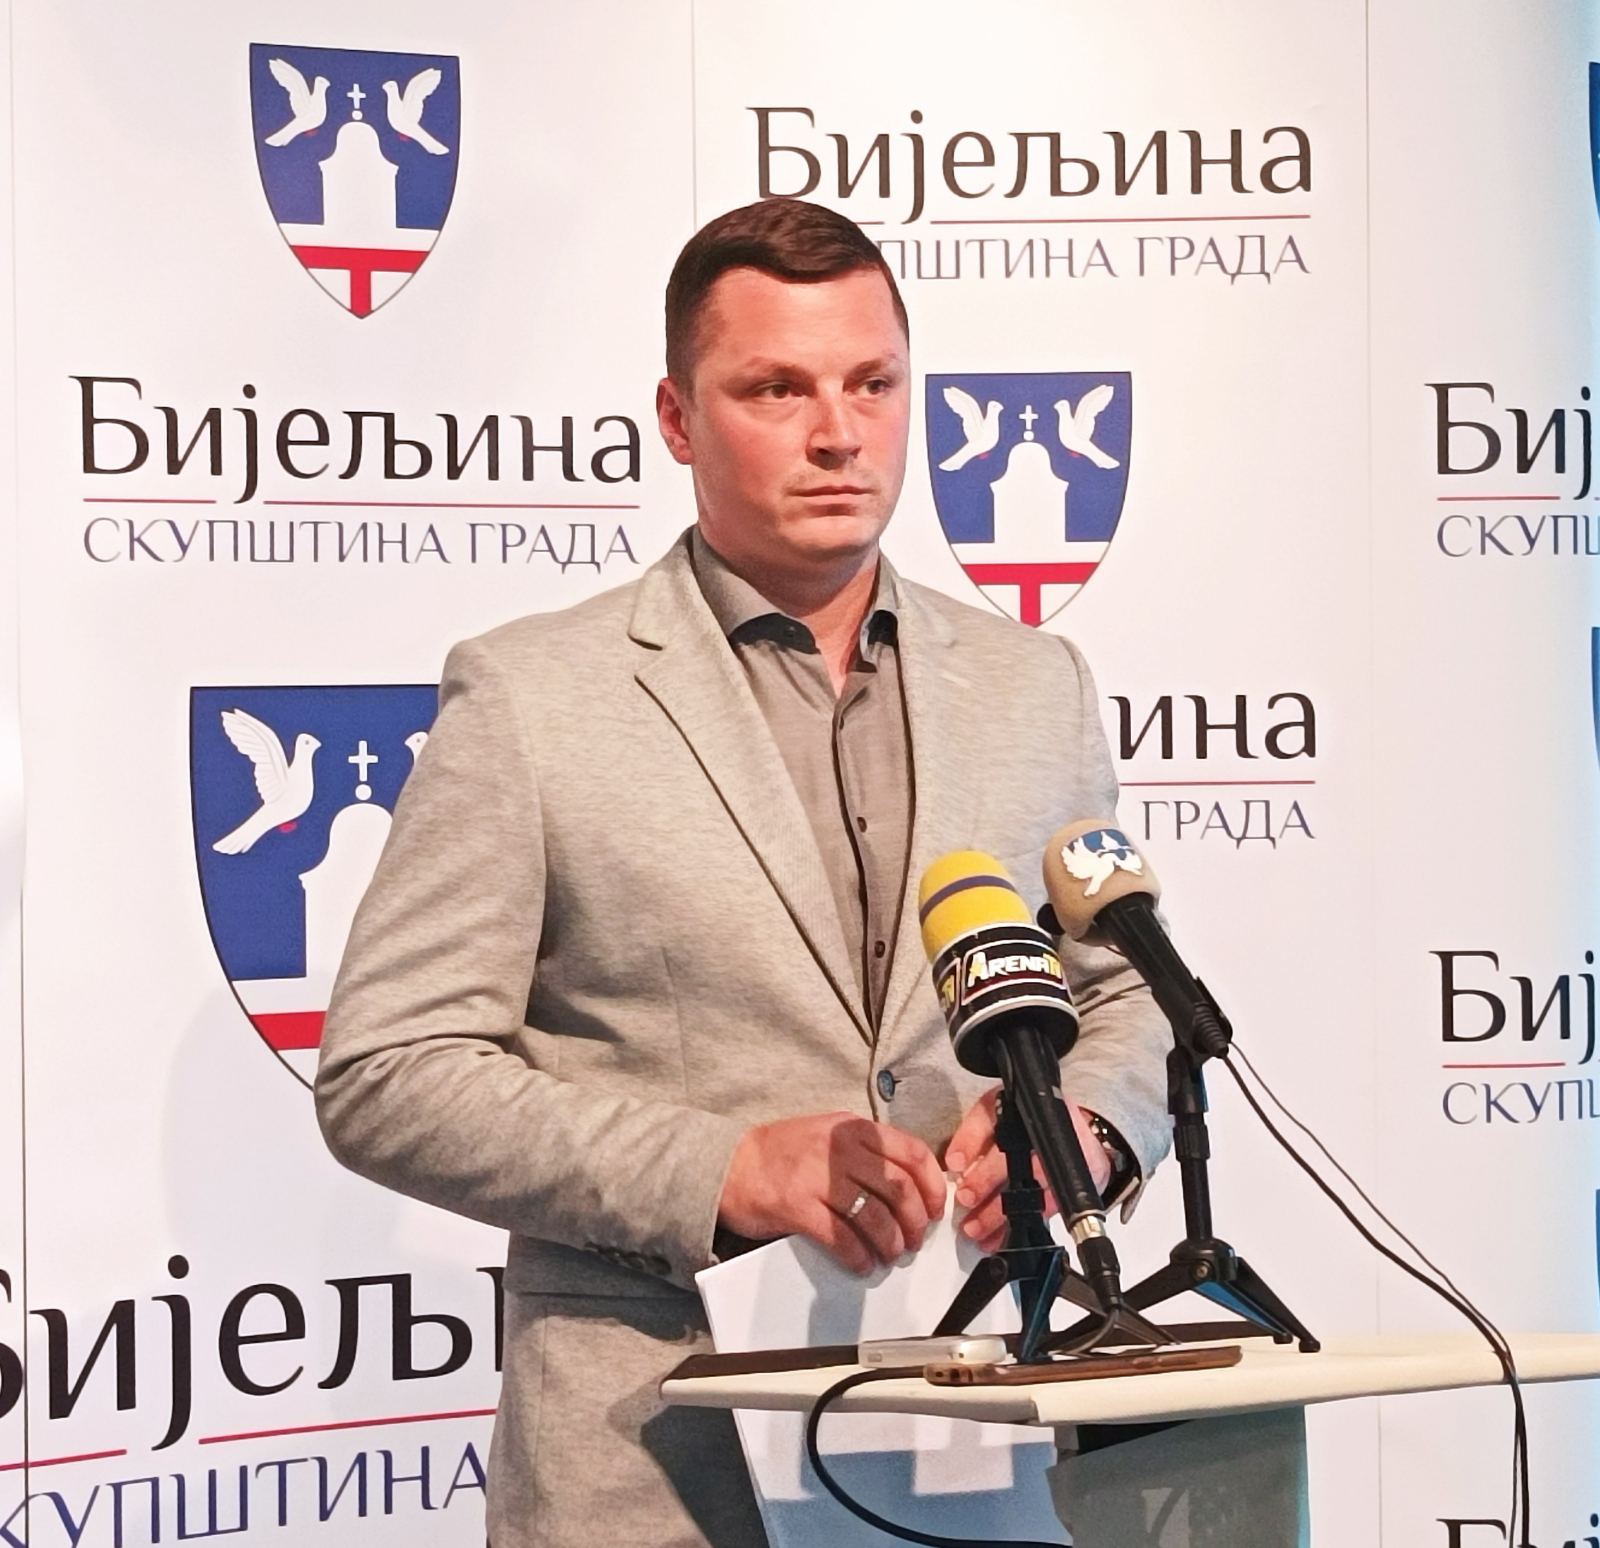 Donesena odluka o održavanju 15. sjednice Skupštine grada Bijeljina